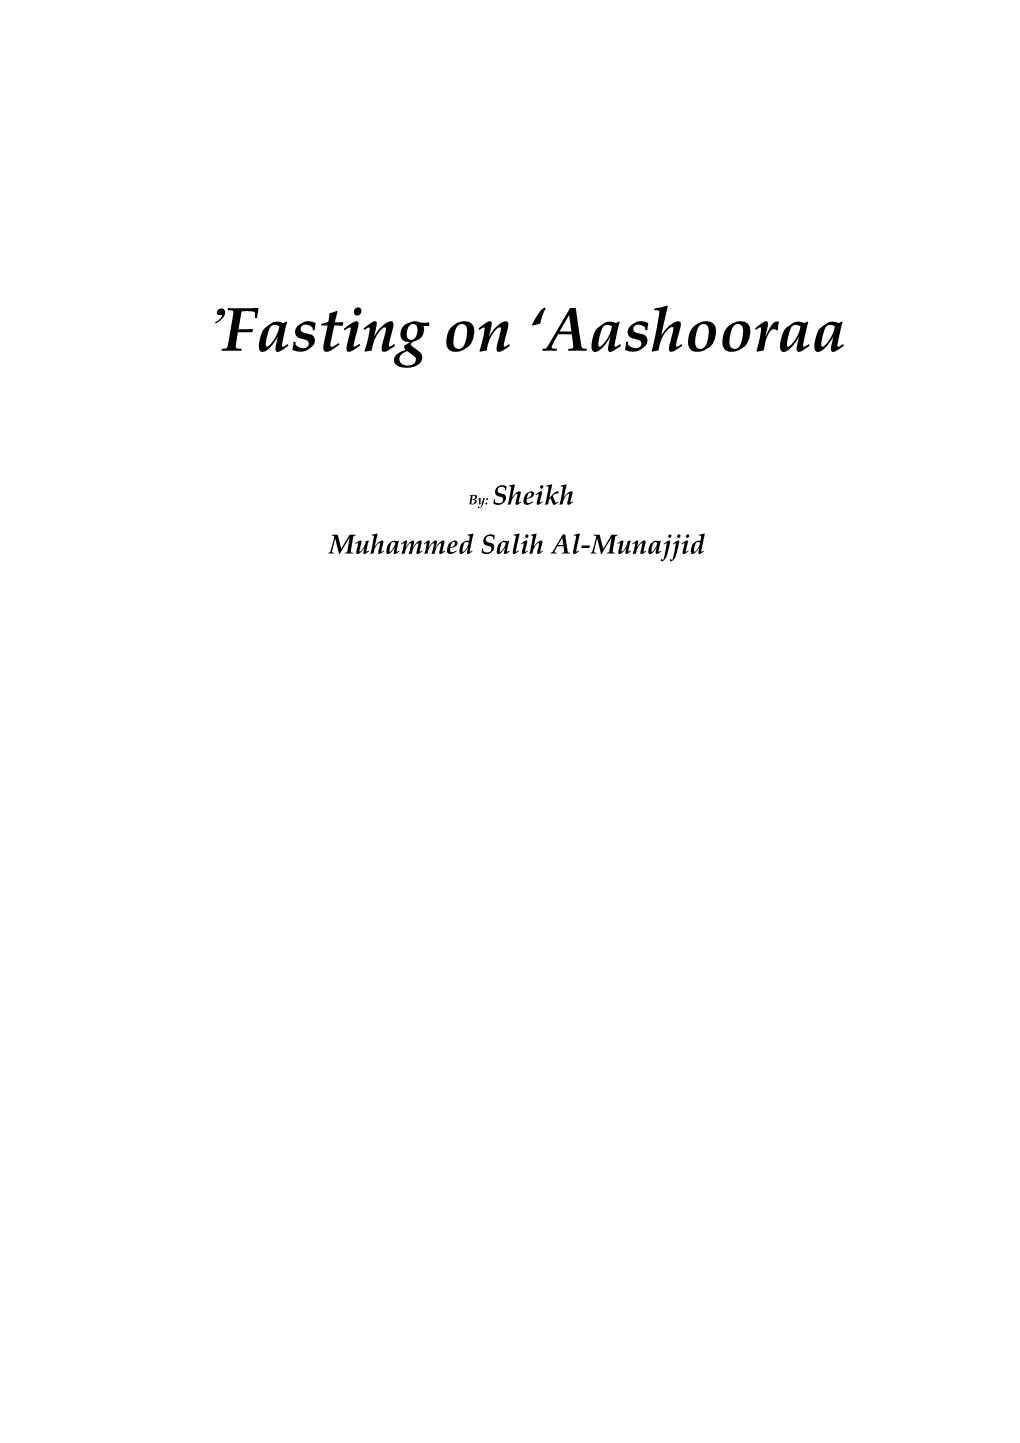 Fasting on Aashooraa